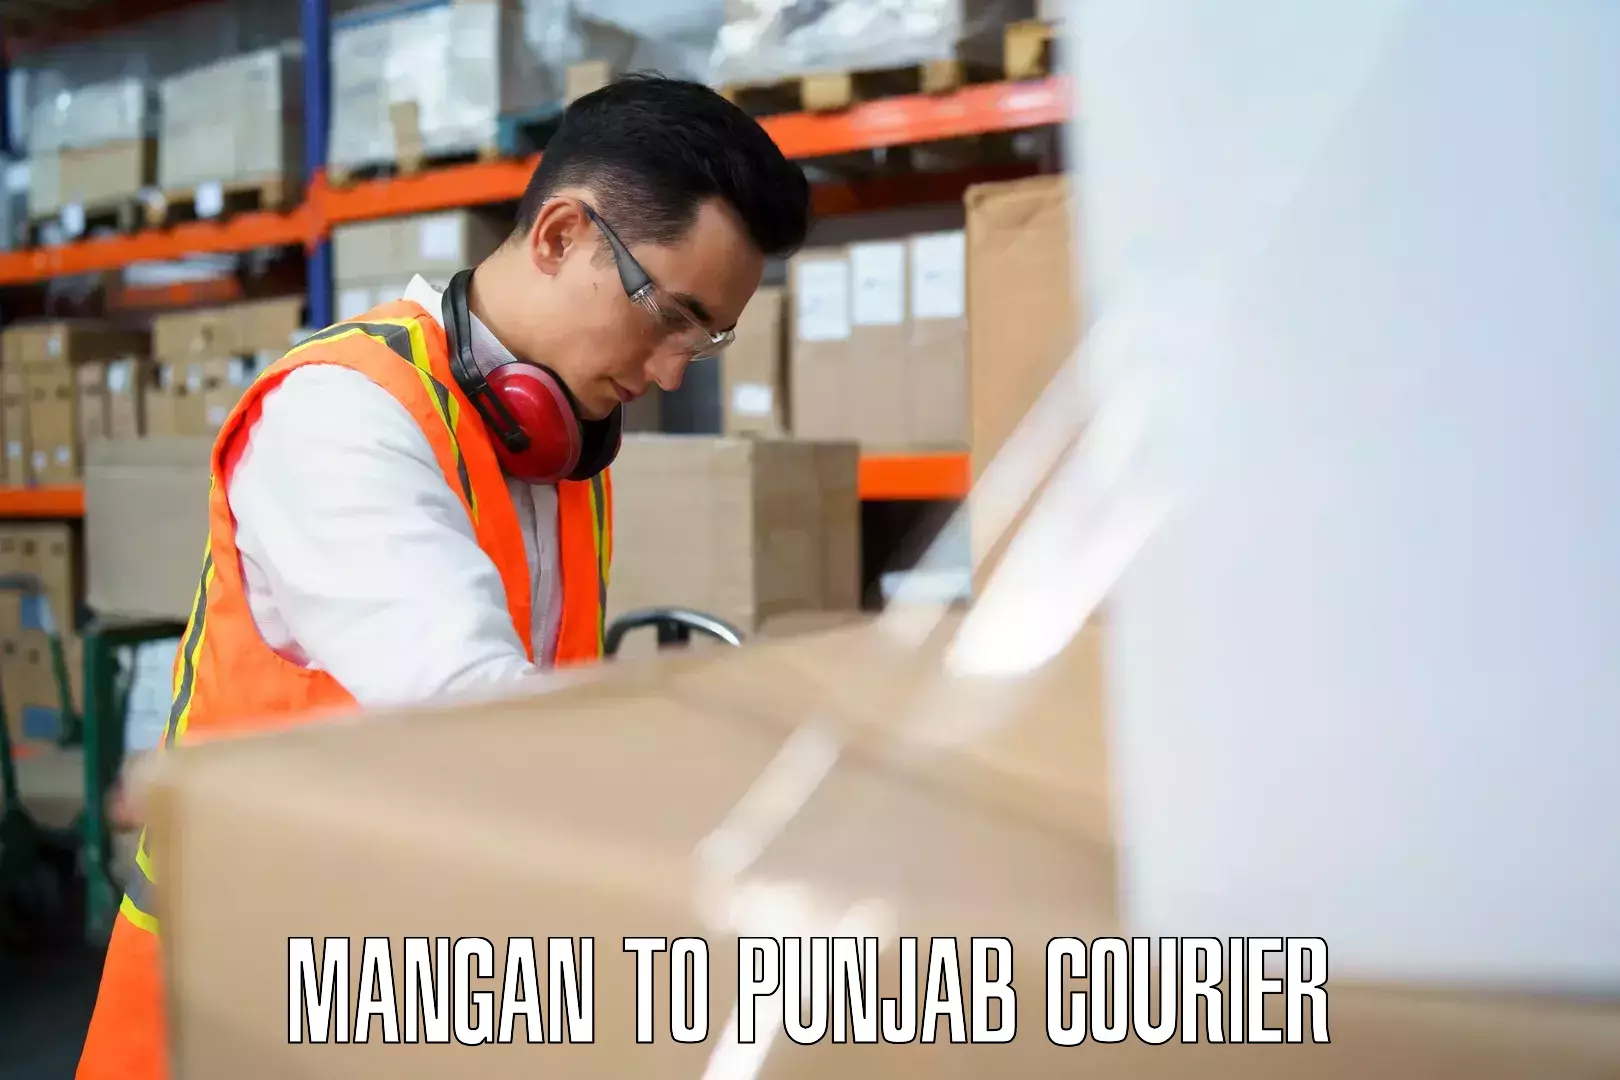 Round trip baggage courier Mangan to Central University of Punjab Bathinda